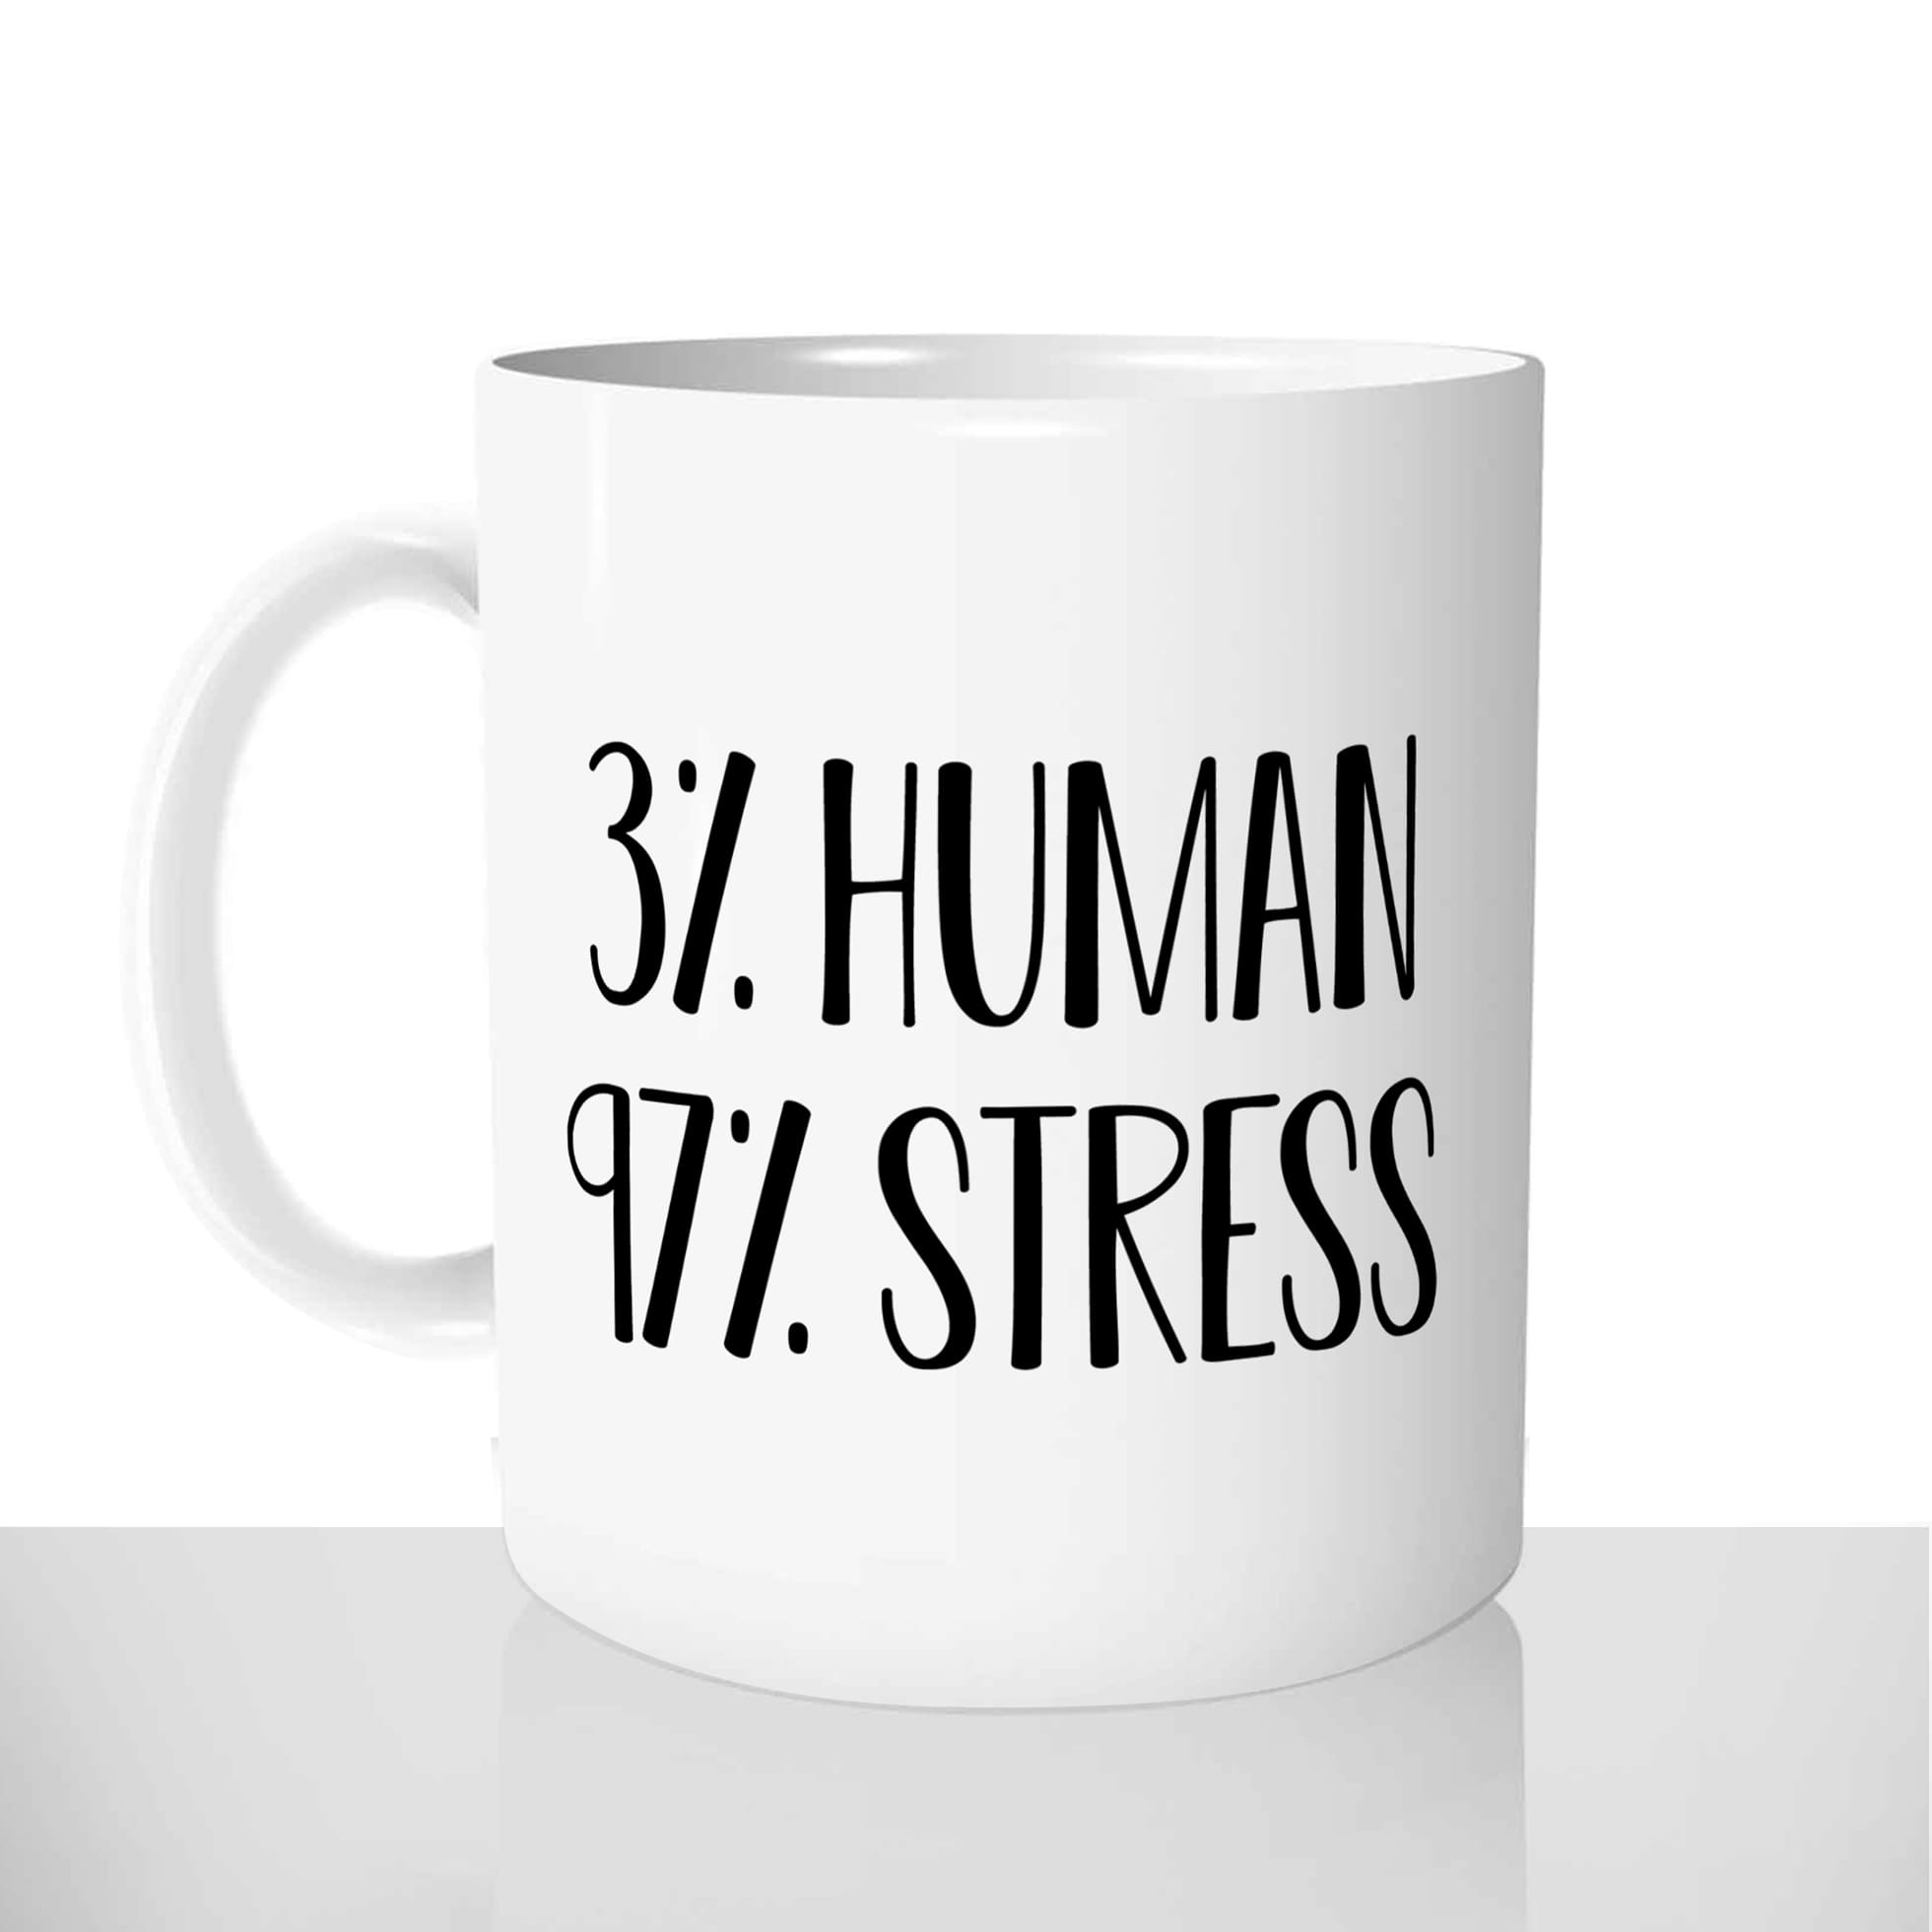 mug classique en céramique 11oz personnalisé personnalisable photo stress humain hamun stressé offrir cadeau chou